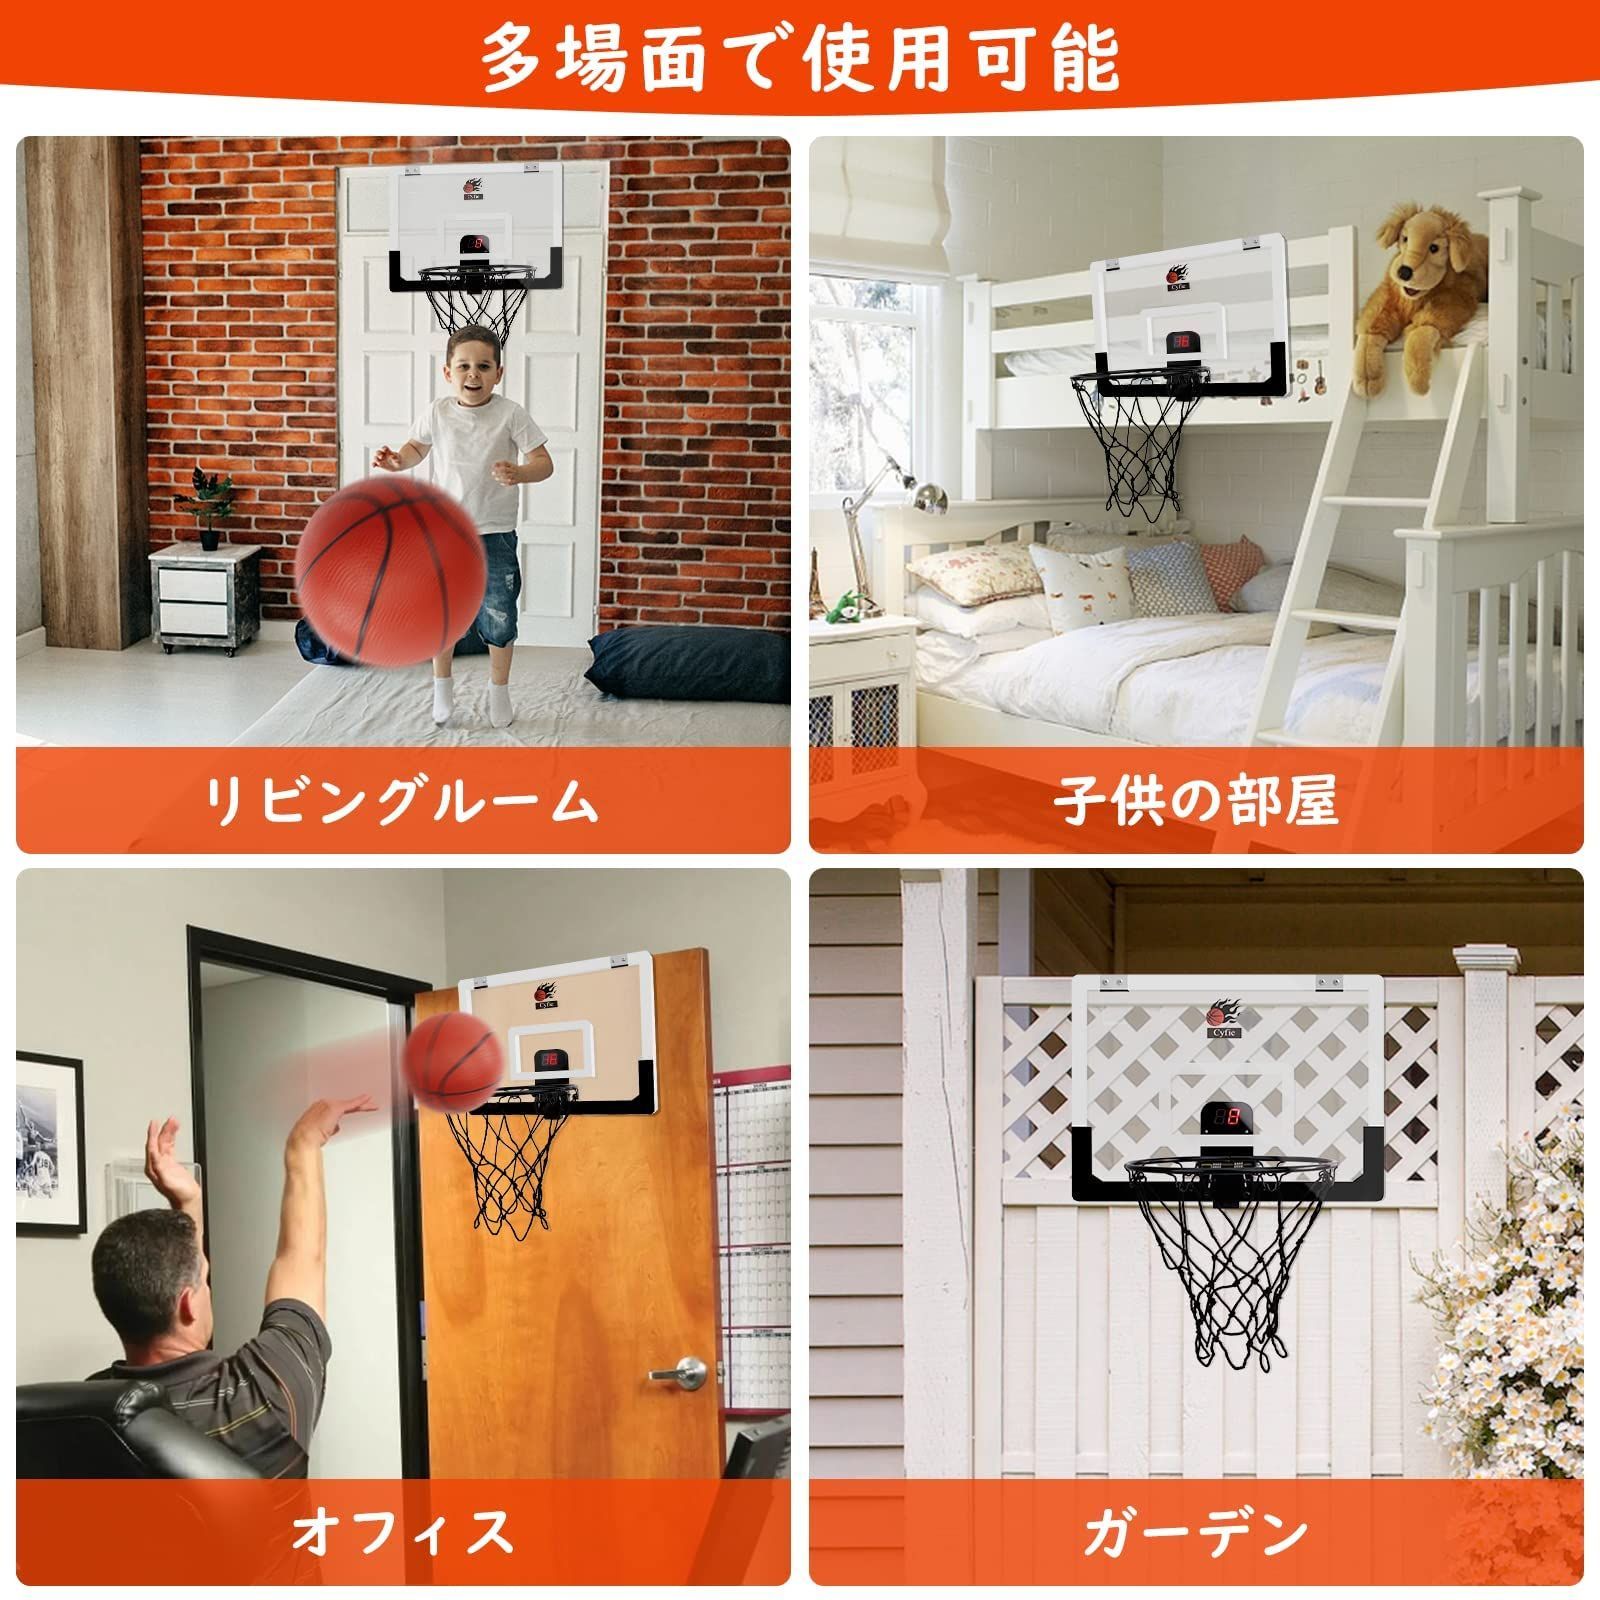 数量限定】耐衝撃 バスケットボール3個付き 室内遊具 子供用バスケット